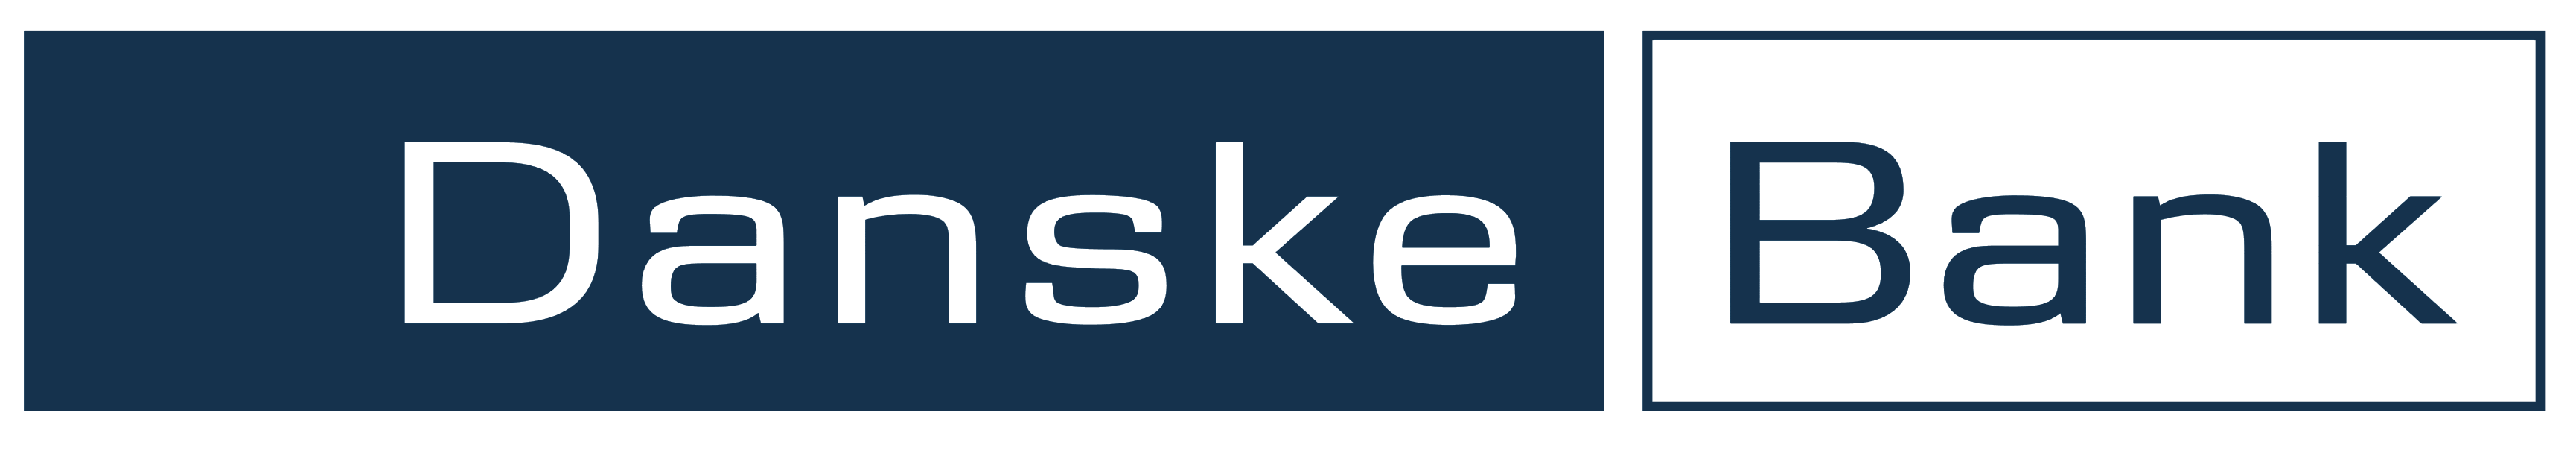 Danske Bank logo, logotype